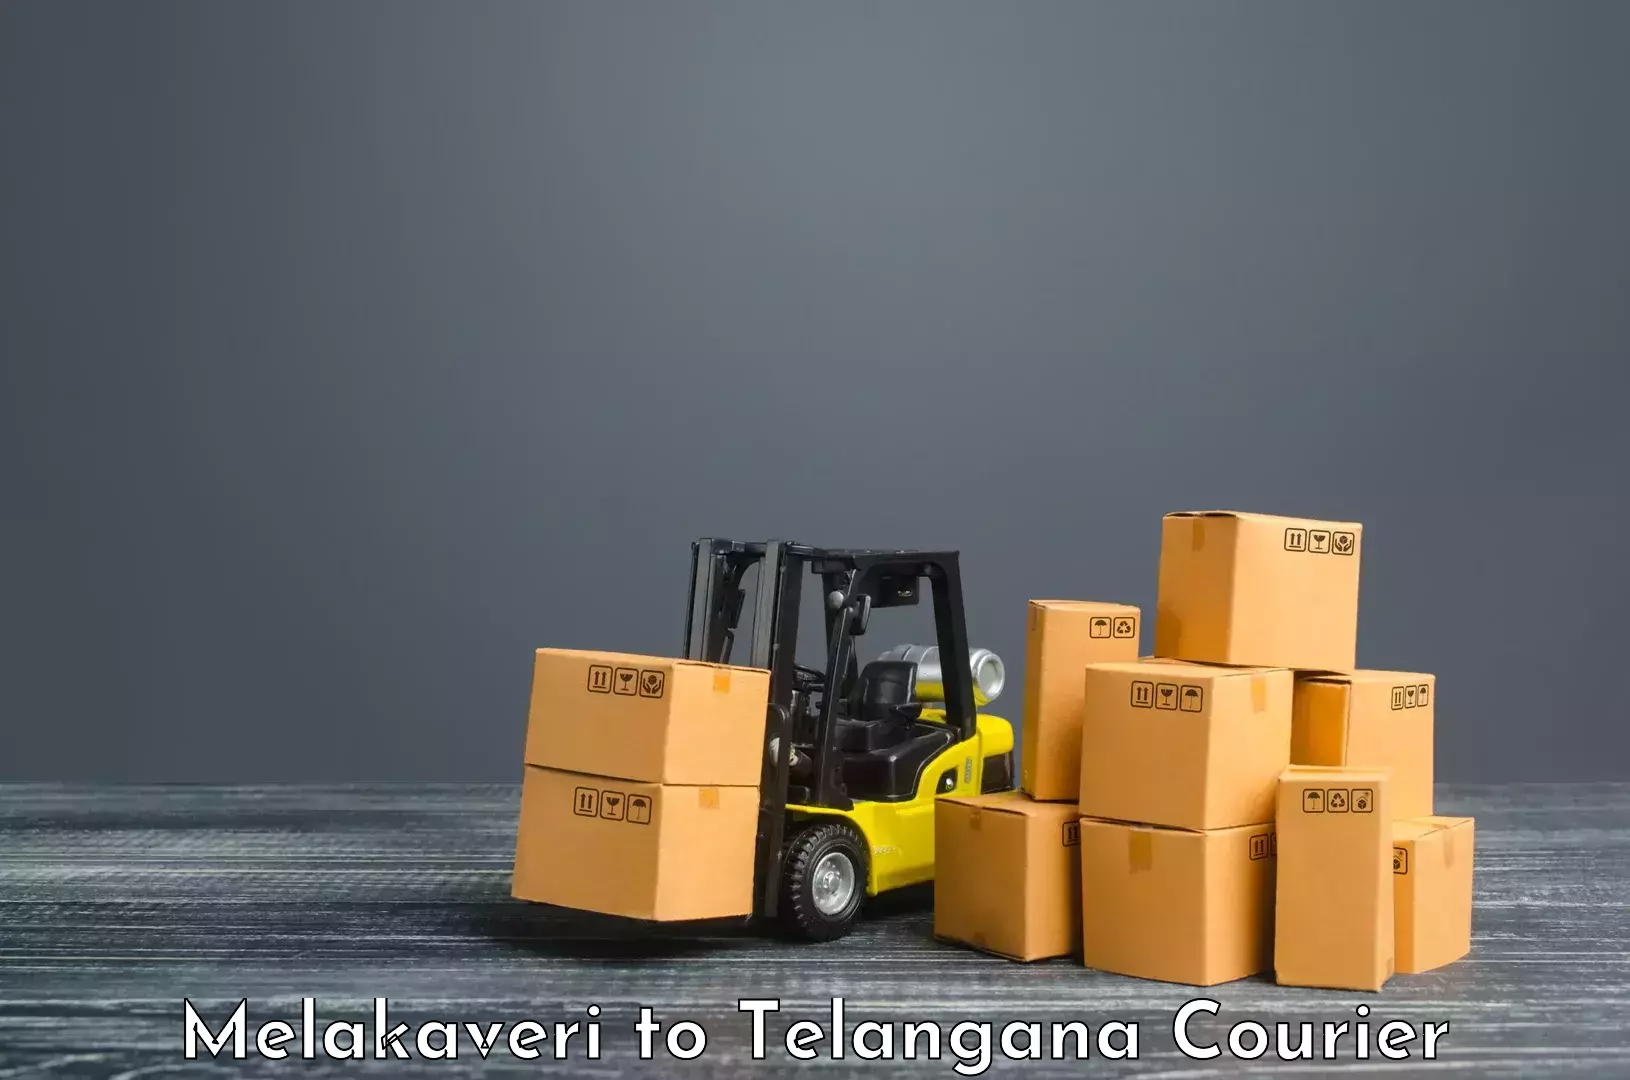 Speedy delivery service Melakaveri to Manthani